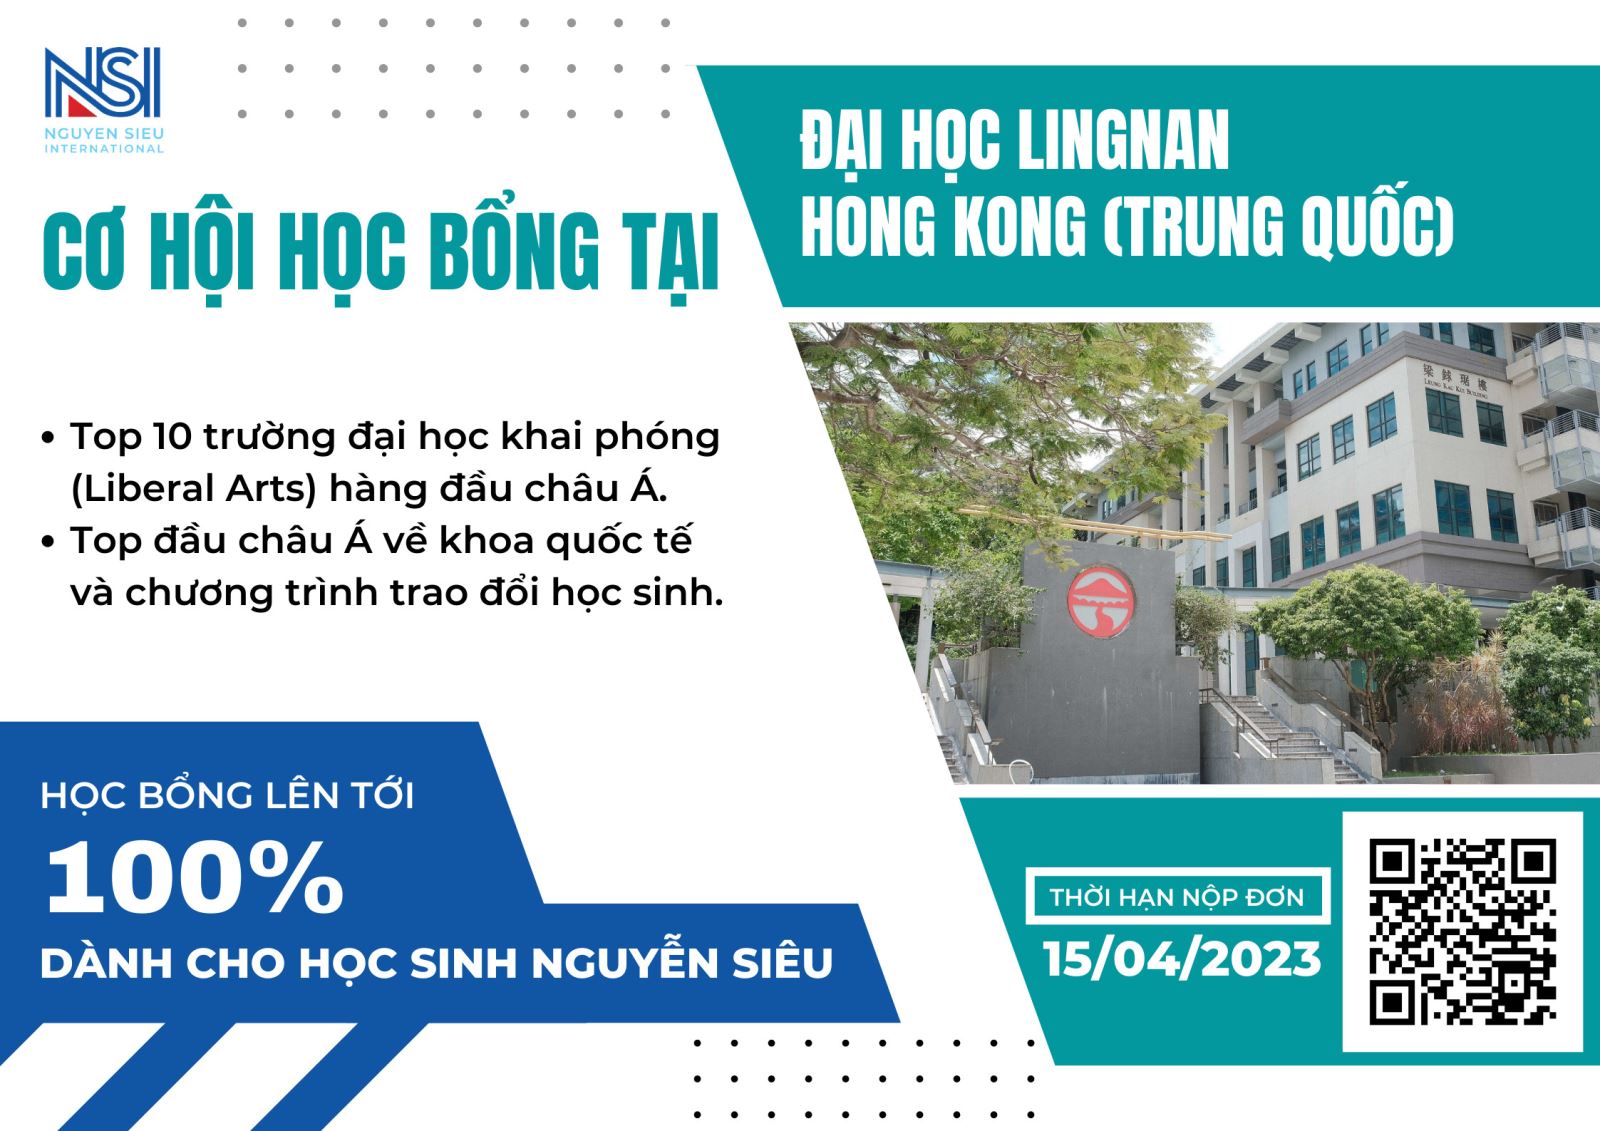 Cơ hội học bổng 100% tại Đại học Lingnan, Hong Kong (Trung Quốc)